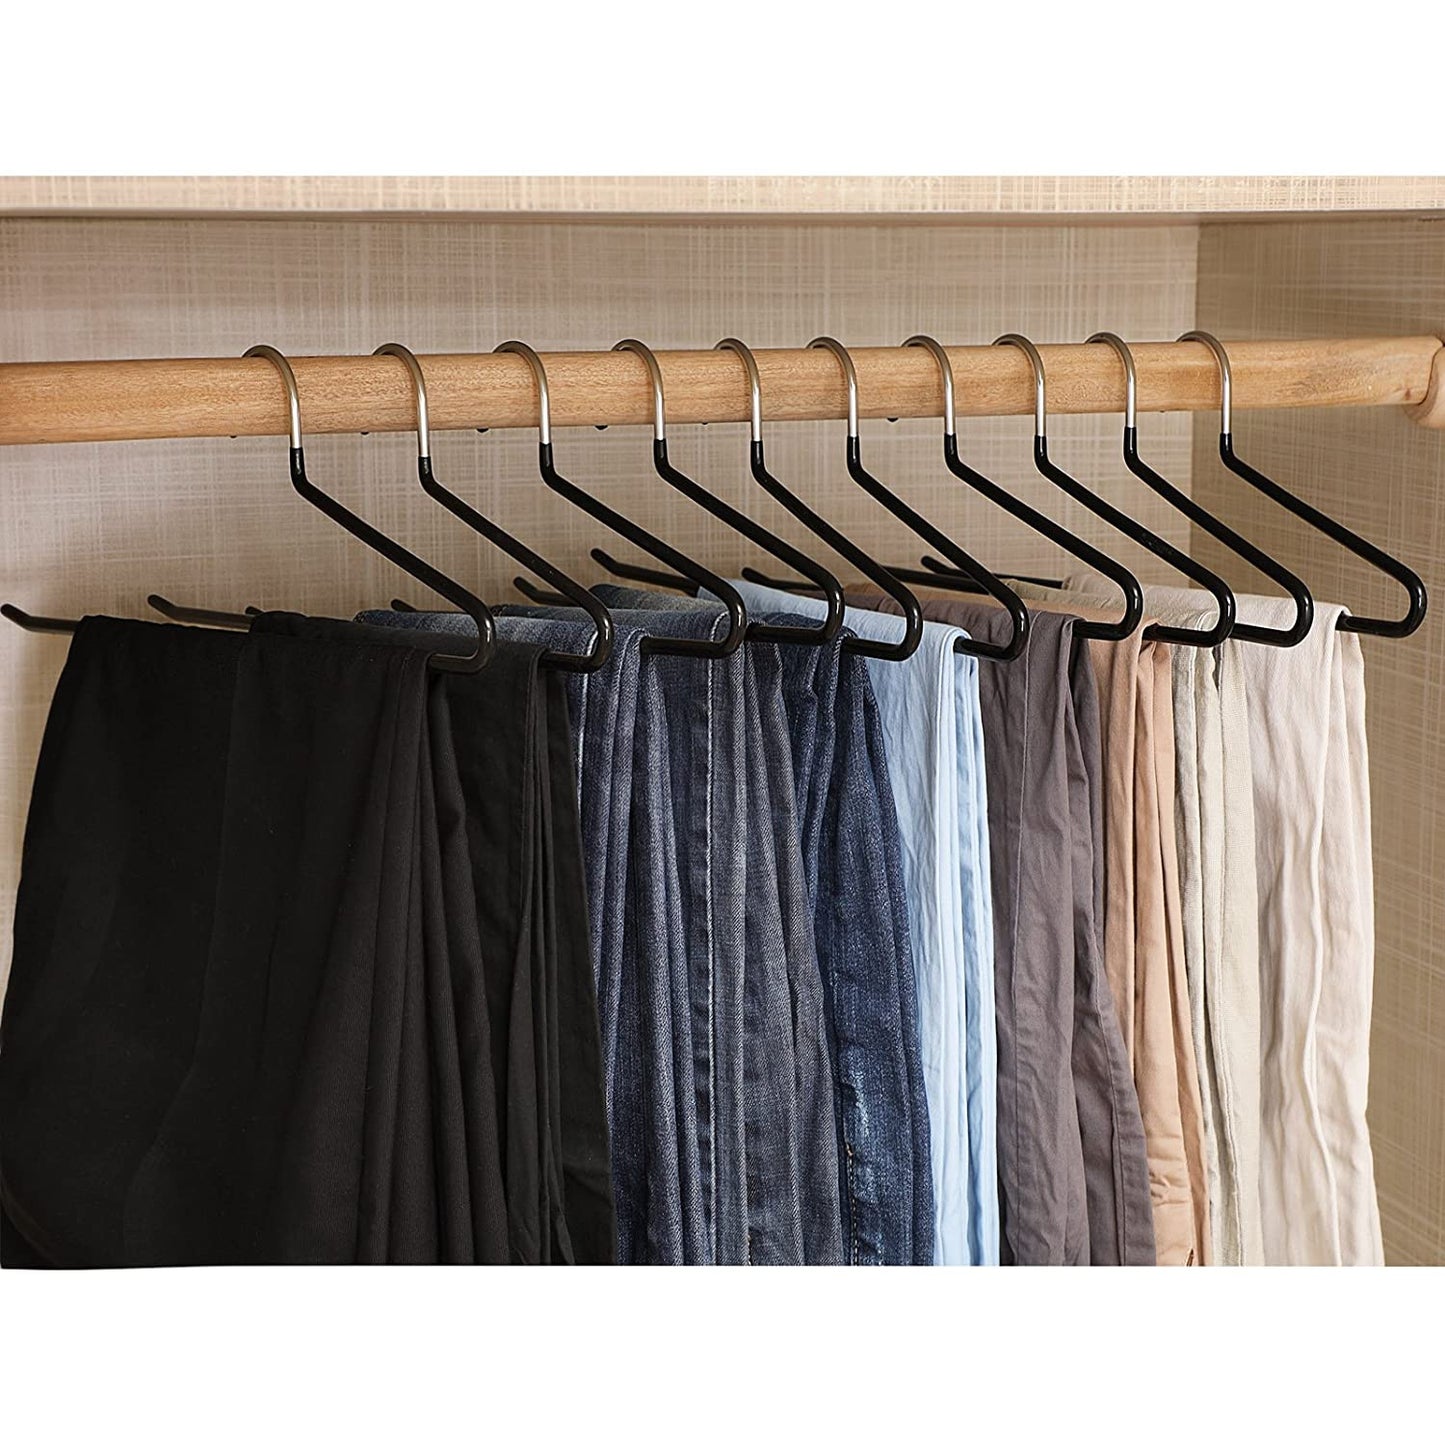 Nancy's Trouser Hanger 50 Pieces - Metal Black Clothes Hanger